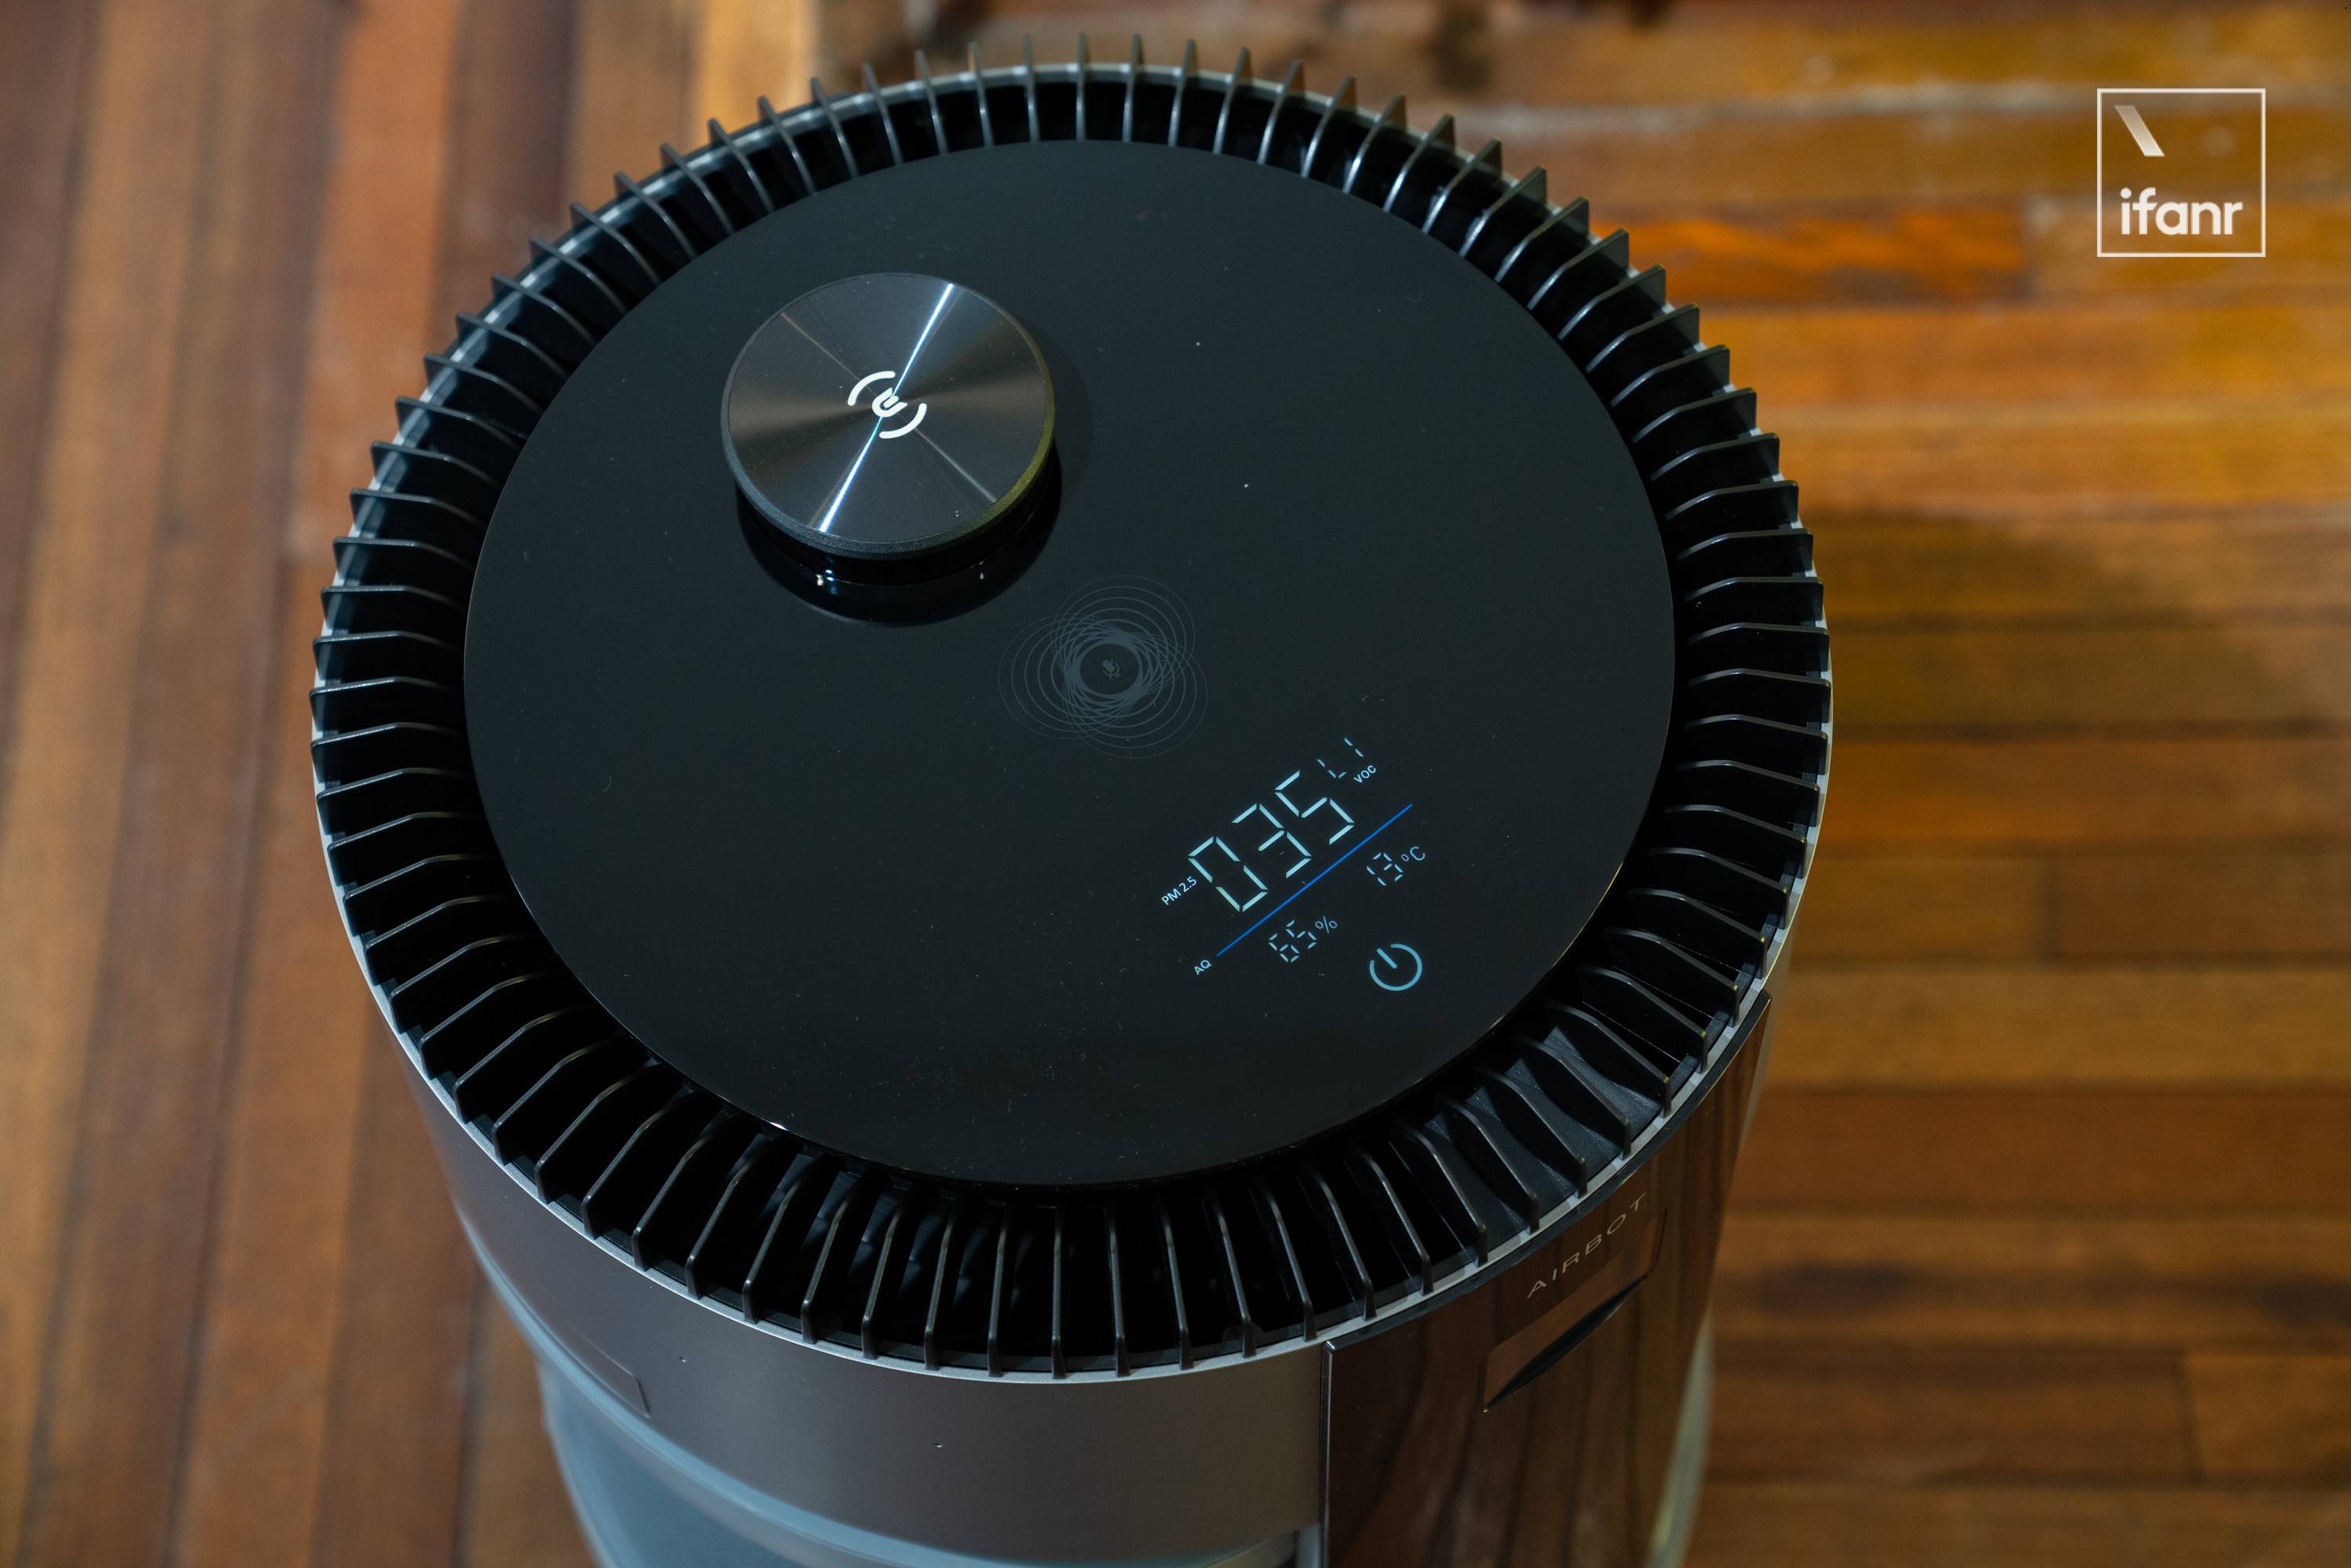 DSC07430 - Esperienza Ecovacs Qinbao AIRBOT Z1: i robot per la pulizia dell’aria vogliono anche essere la tua governante intelligente